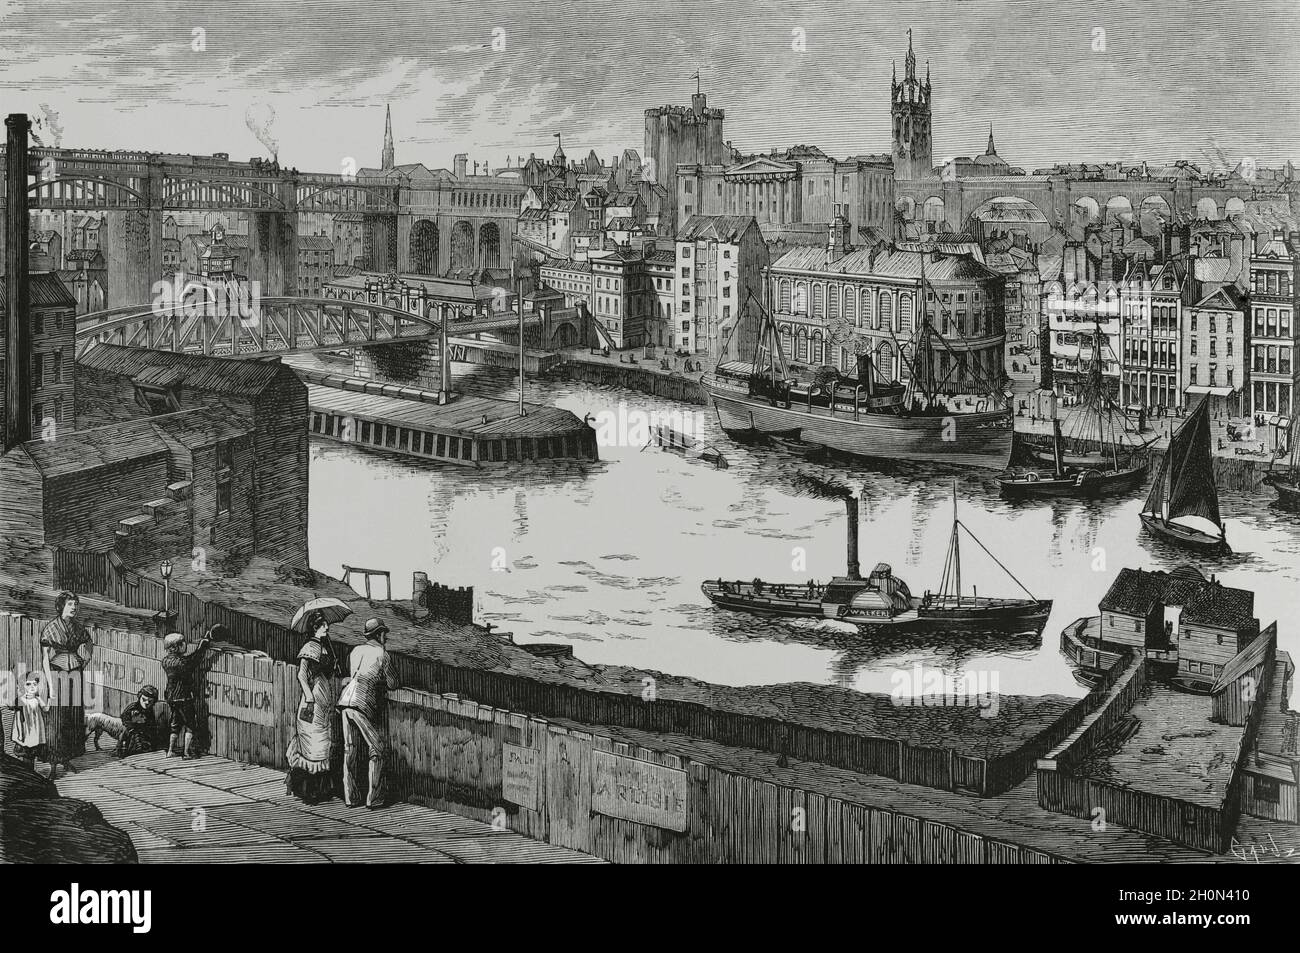 Großbritannien, England, Newcastle. Blick auf die Stadt am Ufer des Flusses Tyne. Wichtiges Handels- und Produktionszentrum. Gravur von Tomas Stockfoto